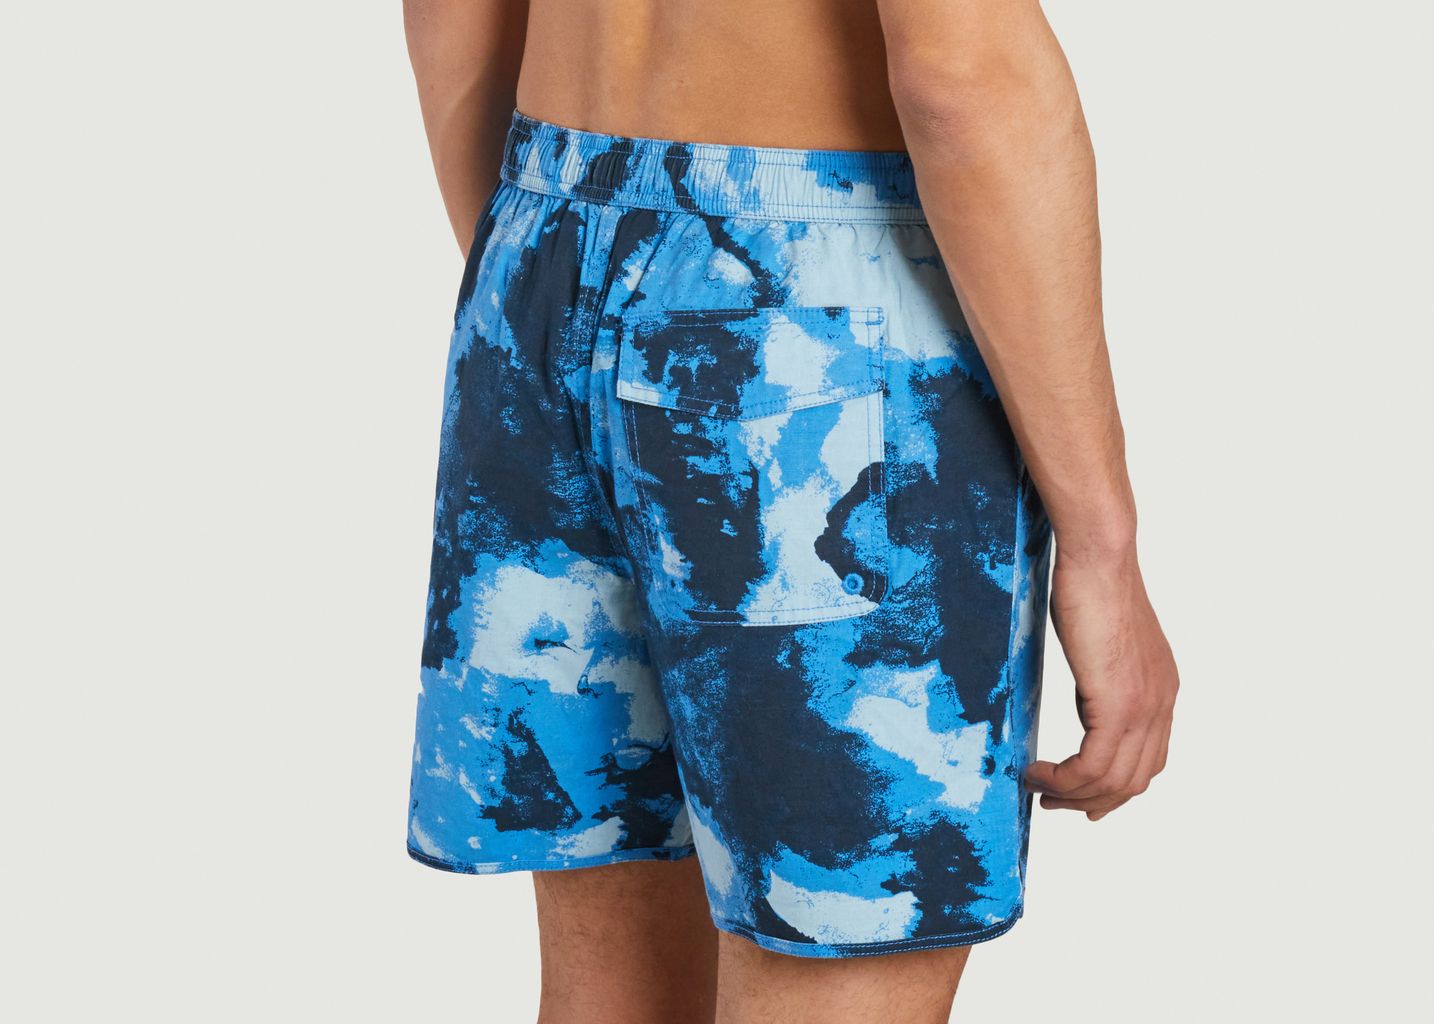 Swim shorts with fancy pattern - KCA